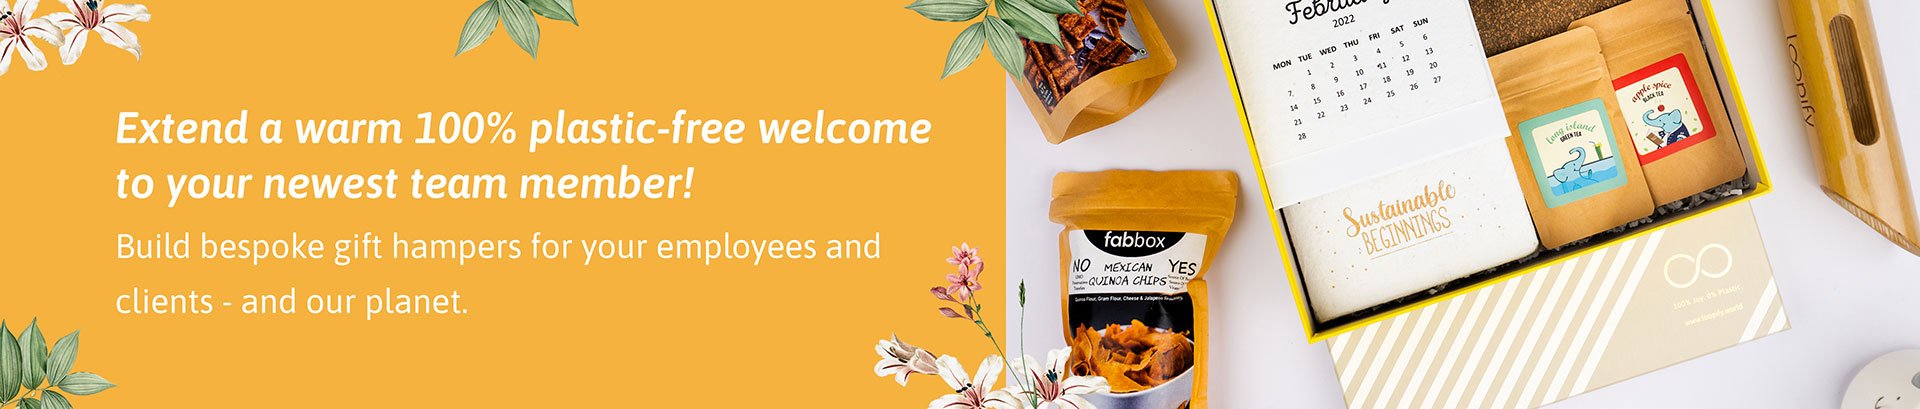 employee-welcome-kit-banner-desktop-v2